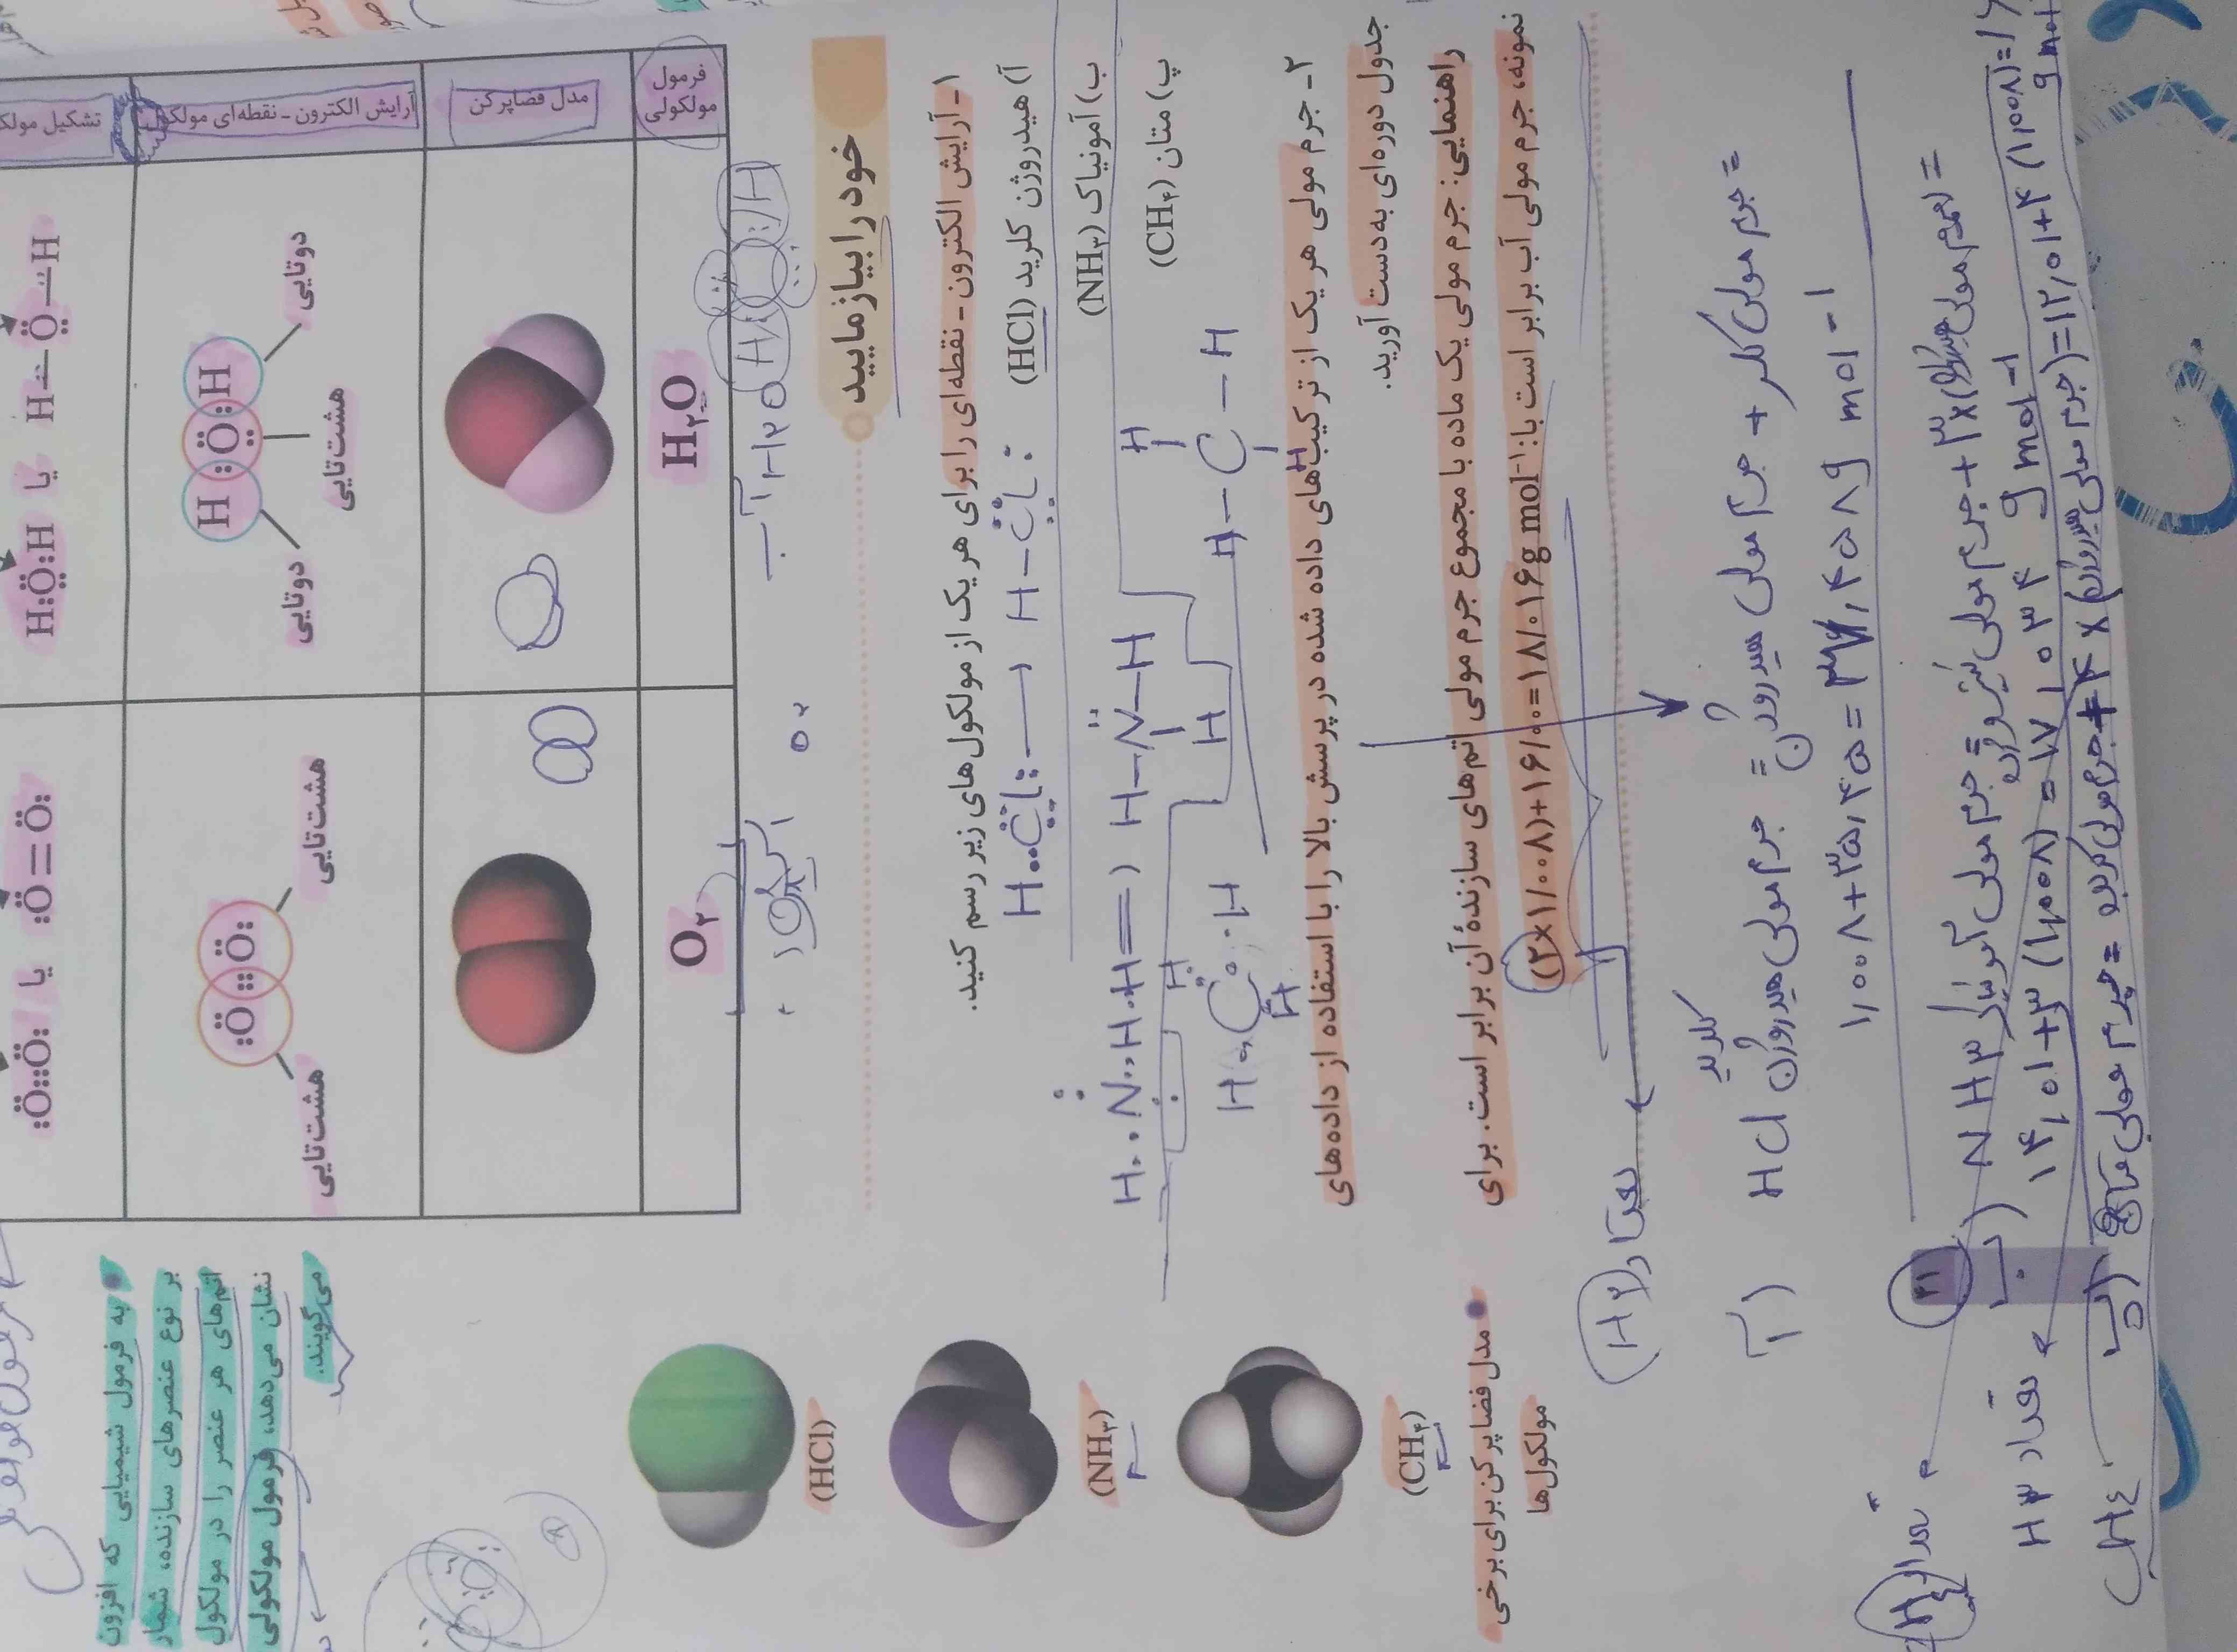 سوال ۲ صفحه ۴۱ شیمی خودرابیازمایید
آیا خودش سواله جرم مولی هر عنصر رو میده ما فقط باید محاسبه کنیم ؟؟
